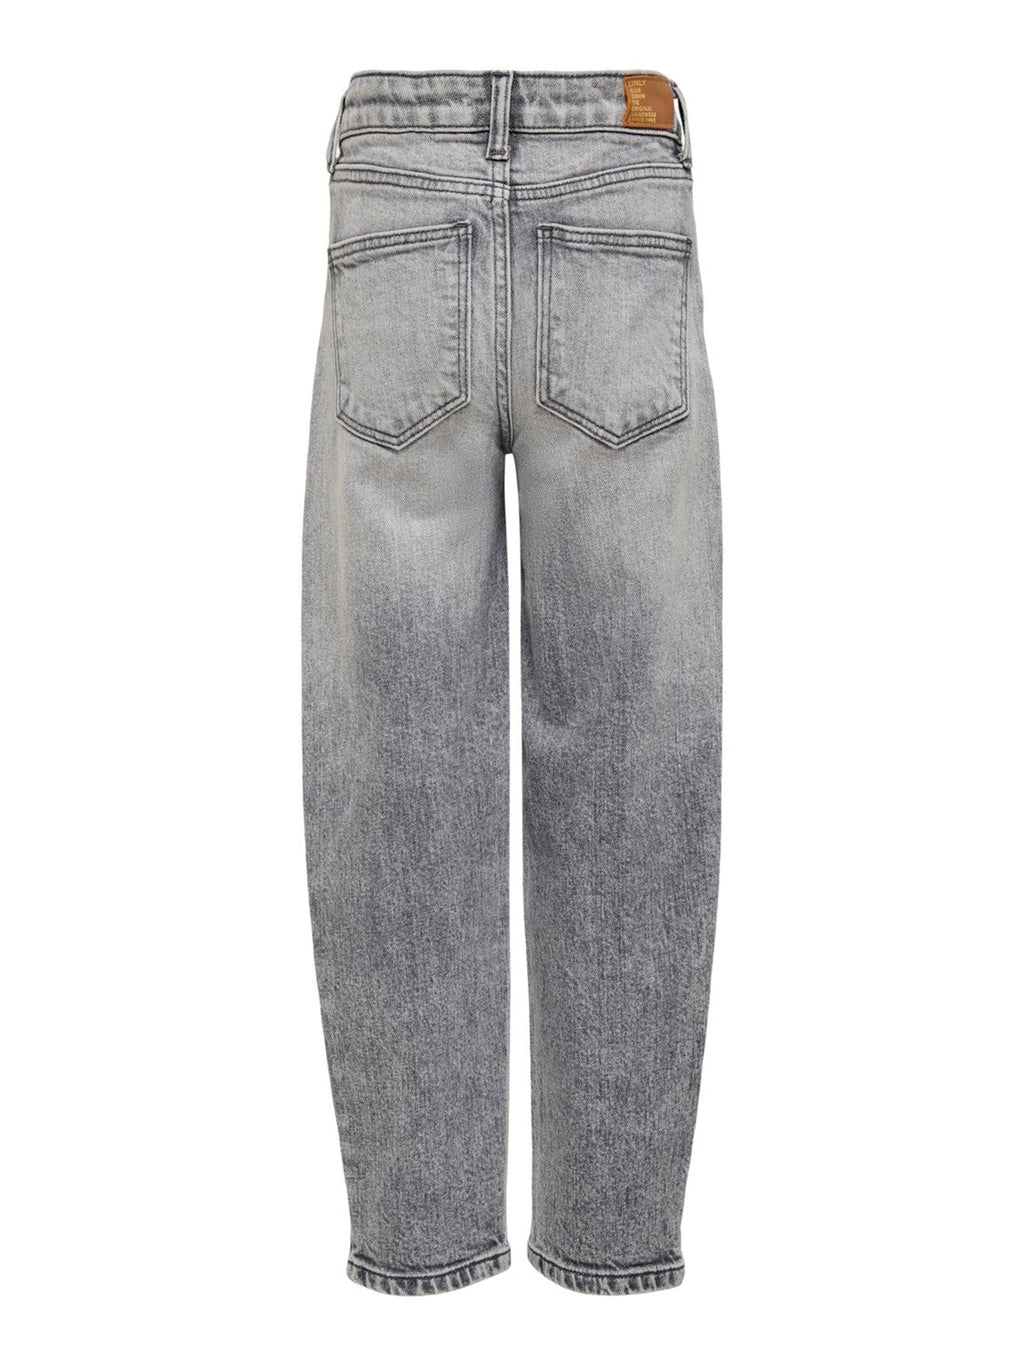 „Lucca Life Jeans“ - šviesiai pilkas džinsinis audinys